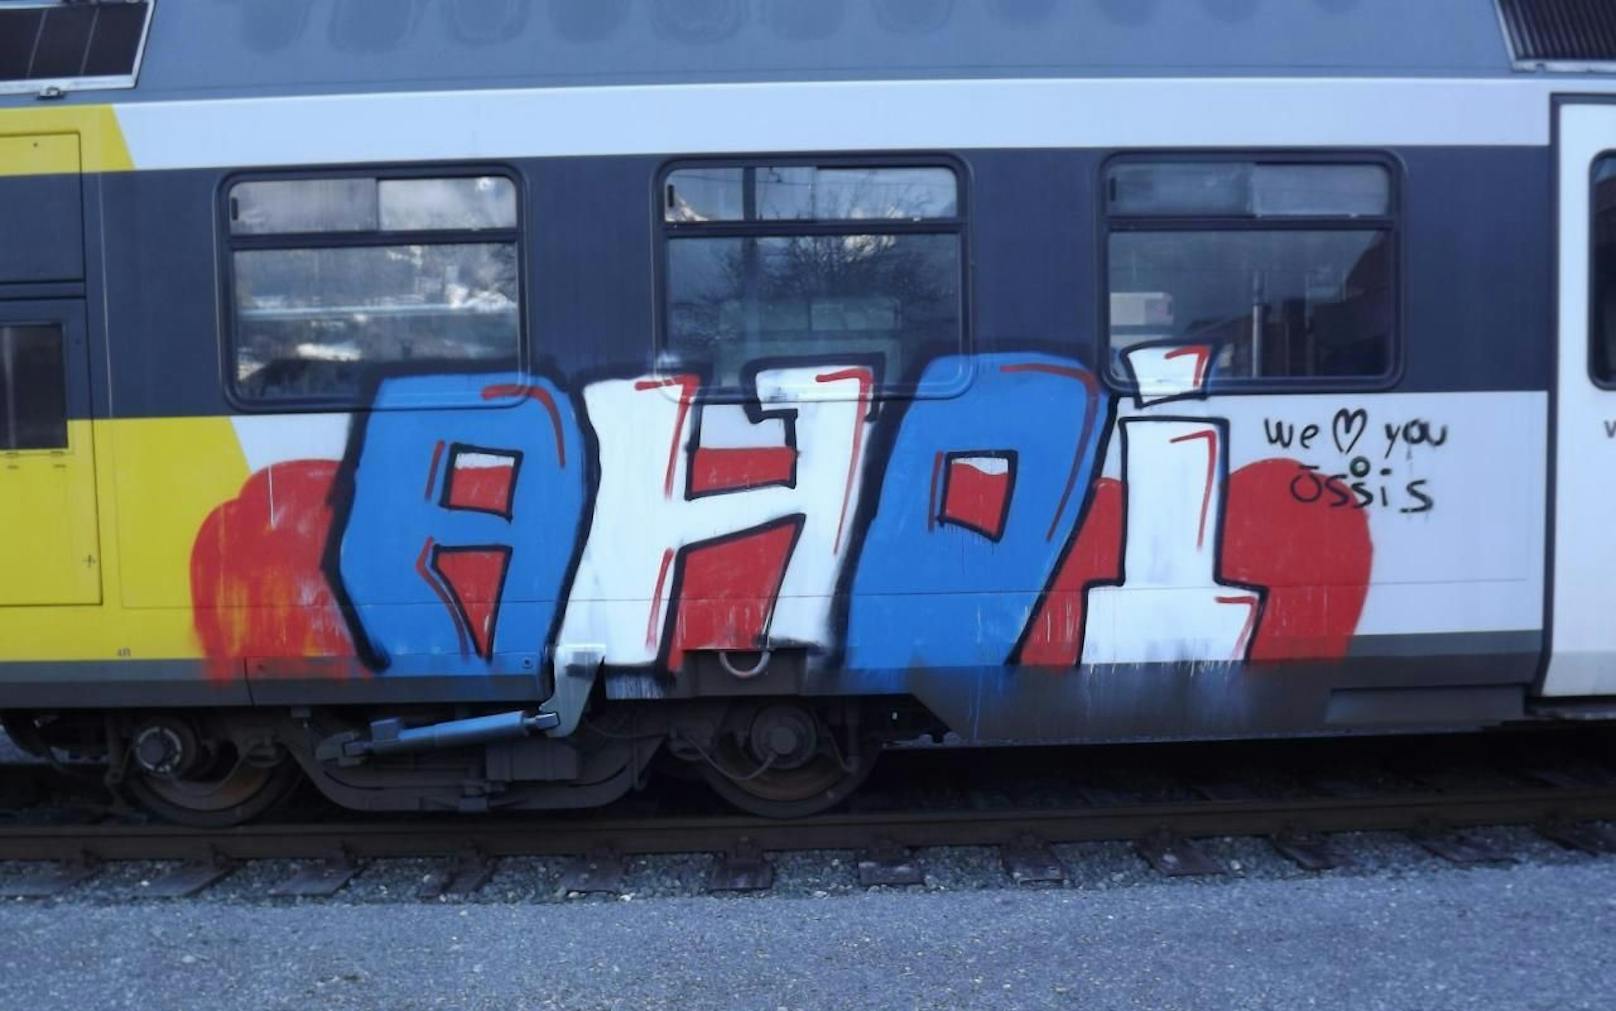 Jugendliche besprühten Zug mit Graffiti – Anzeige